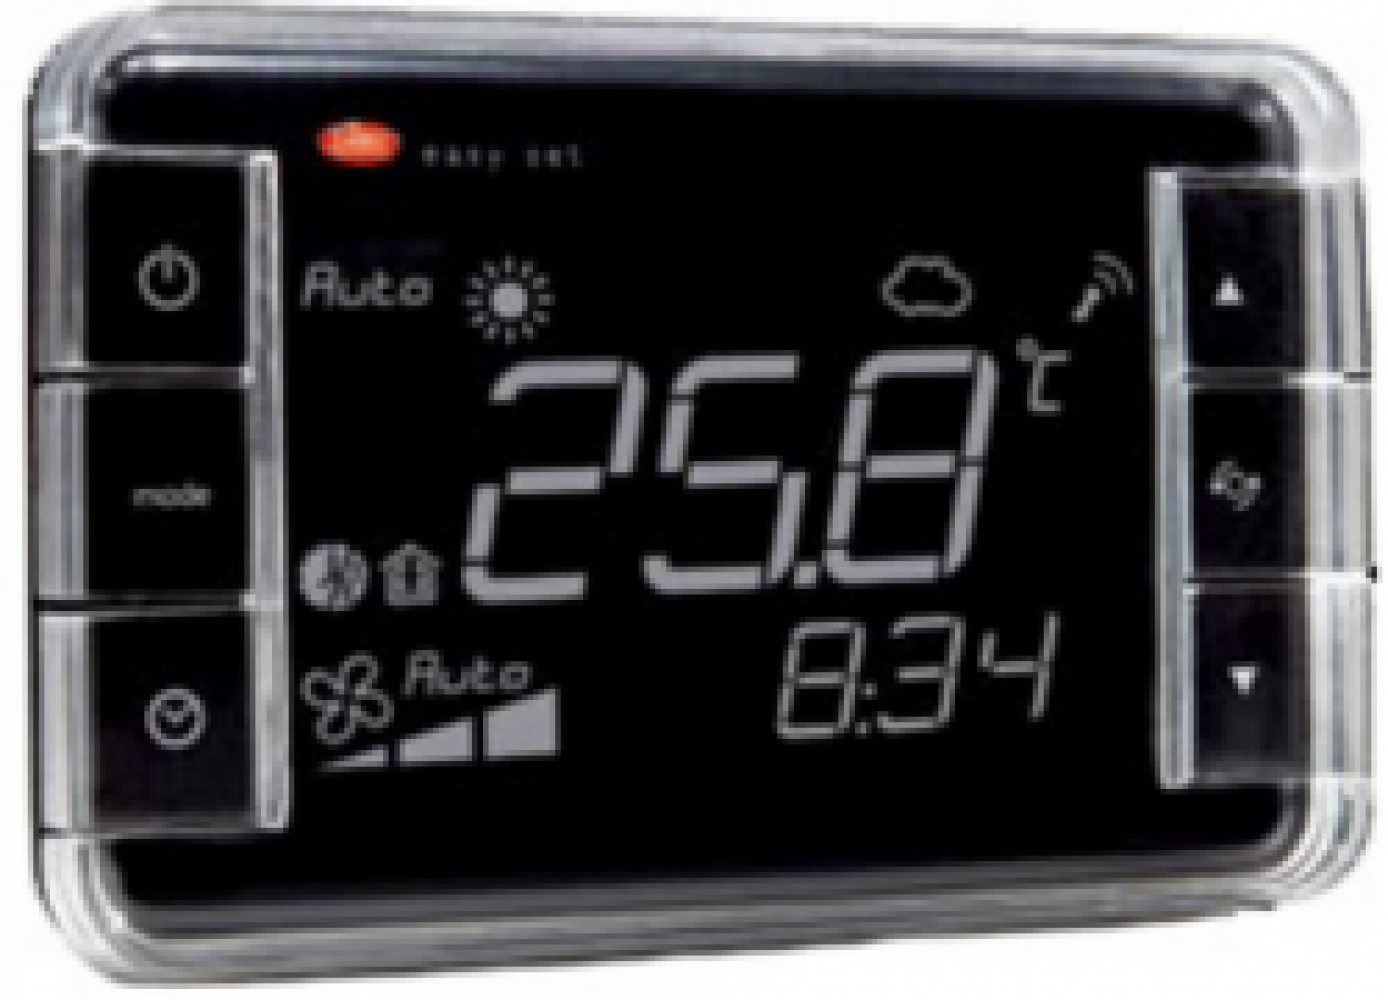 EW01TA1100 Термостат Easyset для e-dronic, контроль температуры, корпус белого цвета, &quot;прямое&quot; отображение